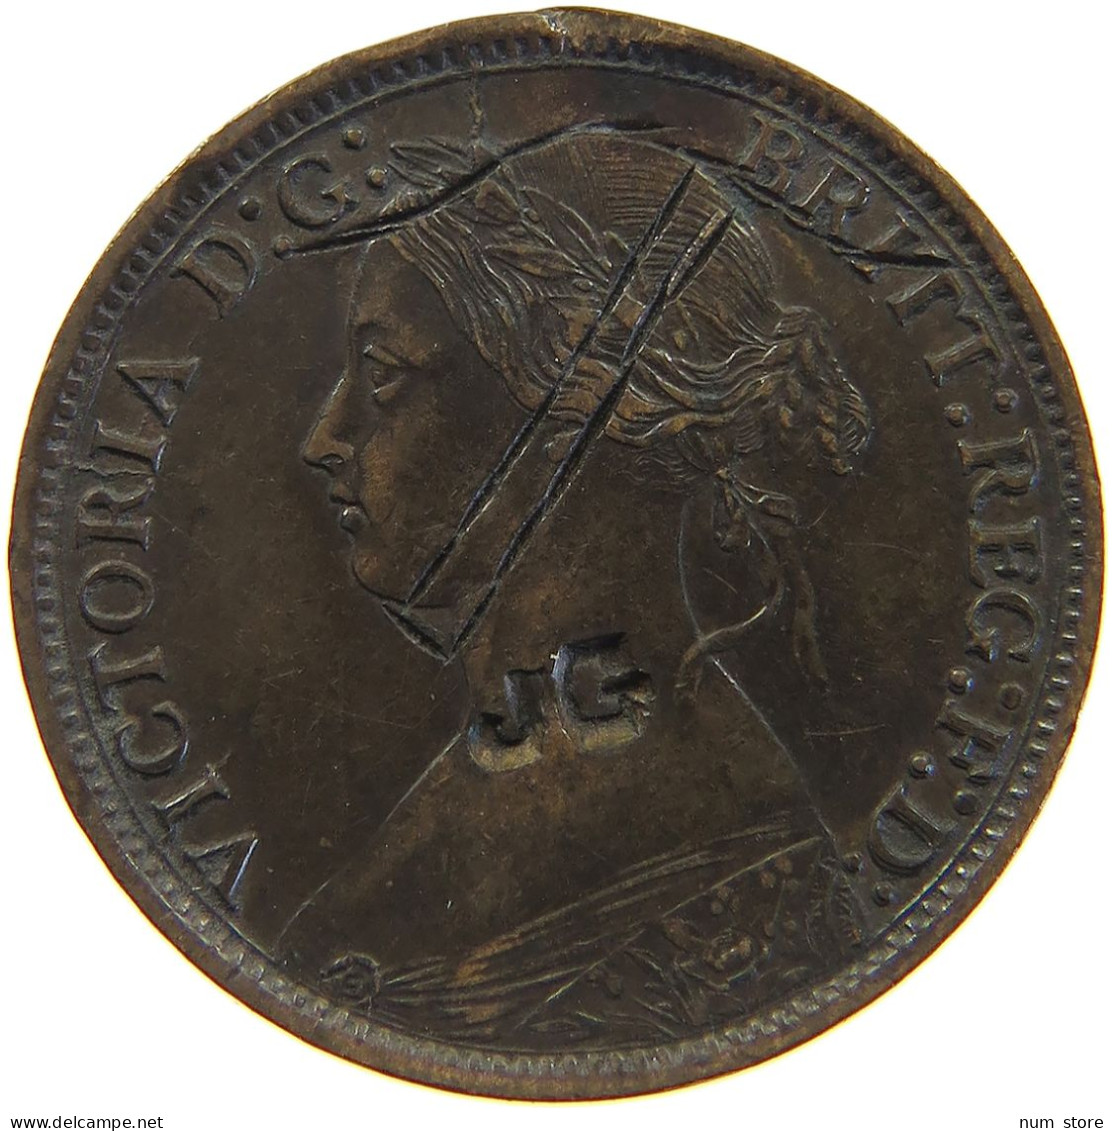 GREAT BRITAIN FARTHING 1866 Victoria 1837-1901 SATIRICAL HAT COUNTERMARKED JG #c050 0363 - B. 1 Farthing